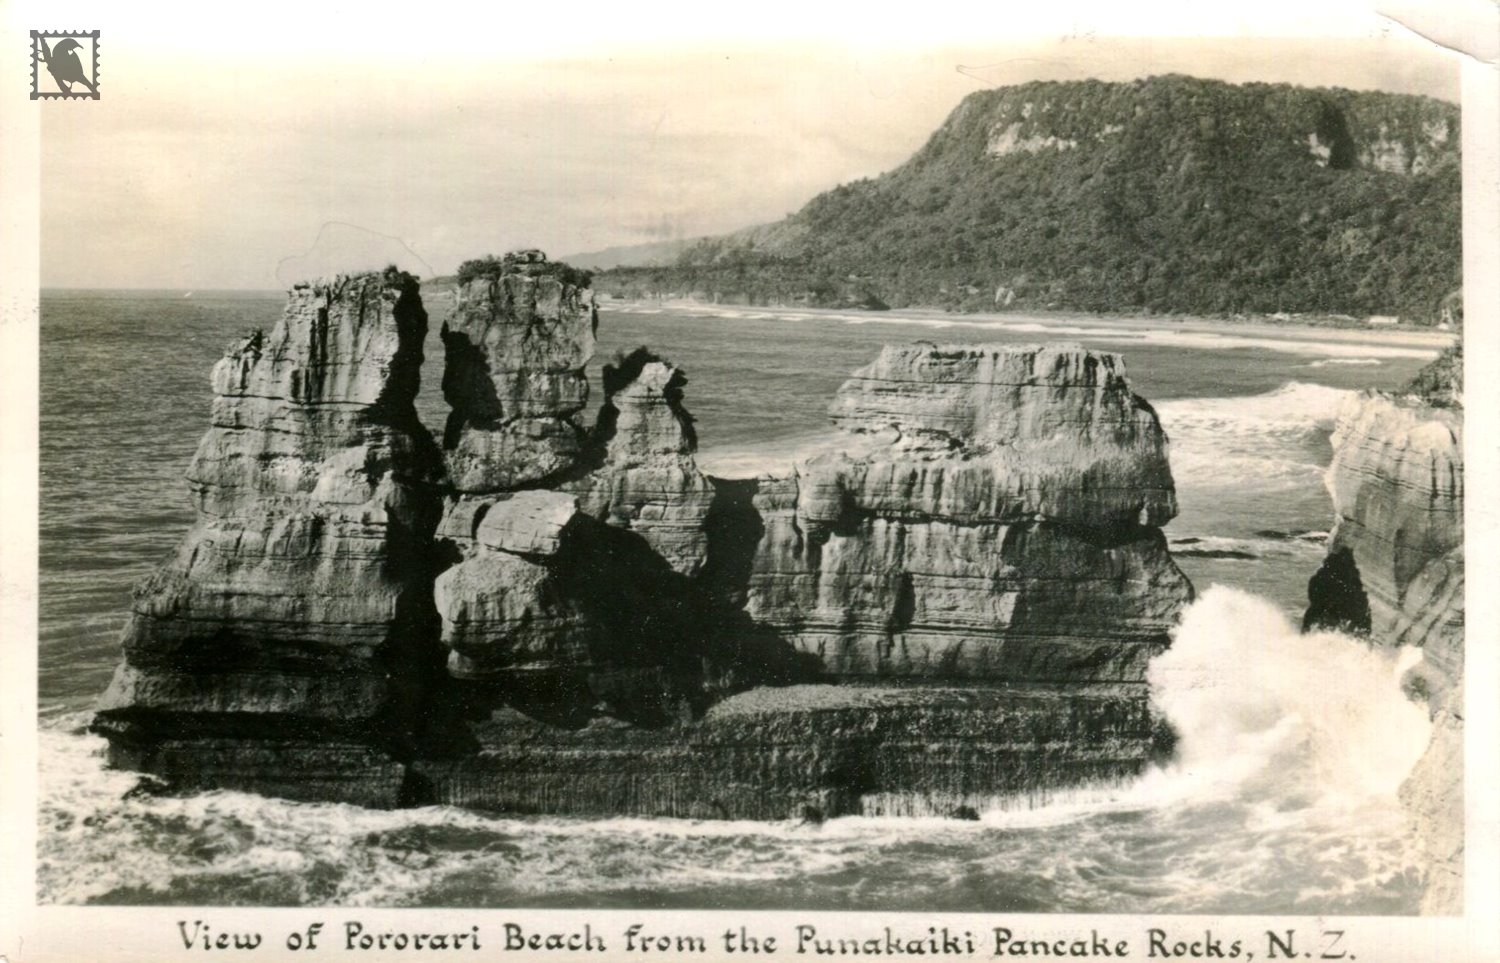 View from The Punakaiki Pancake Rocks